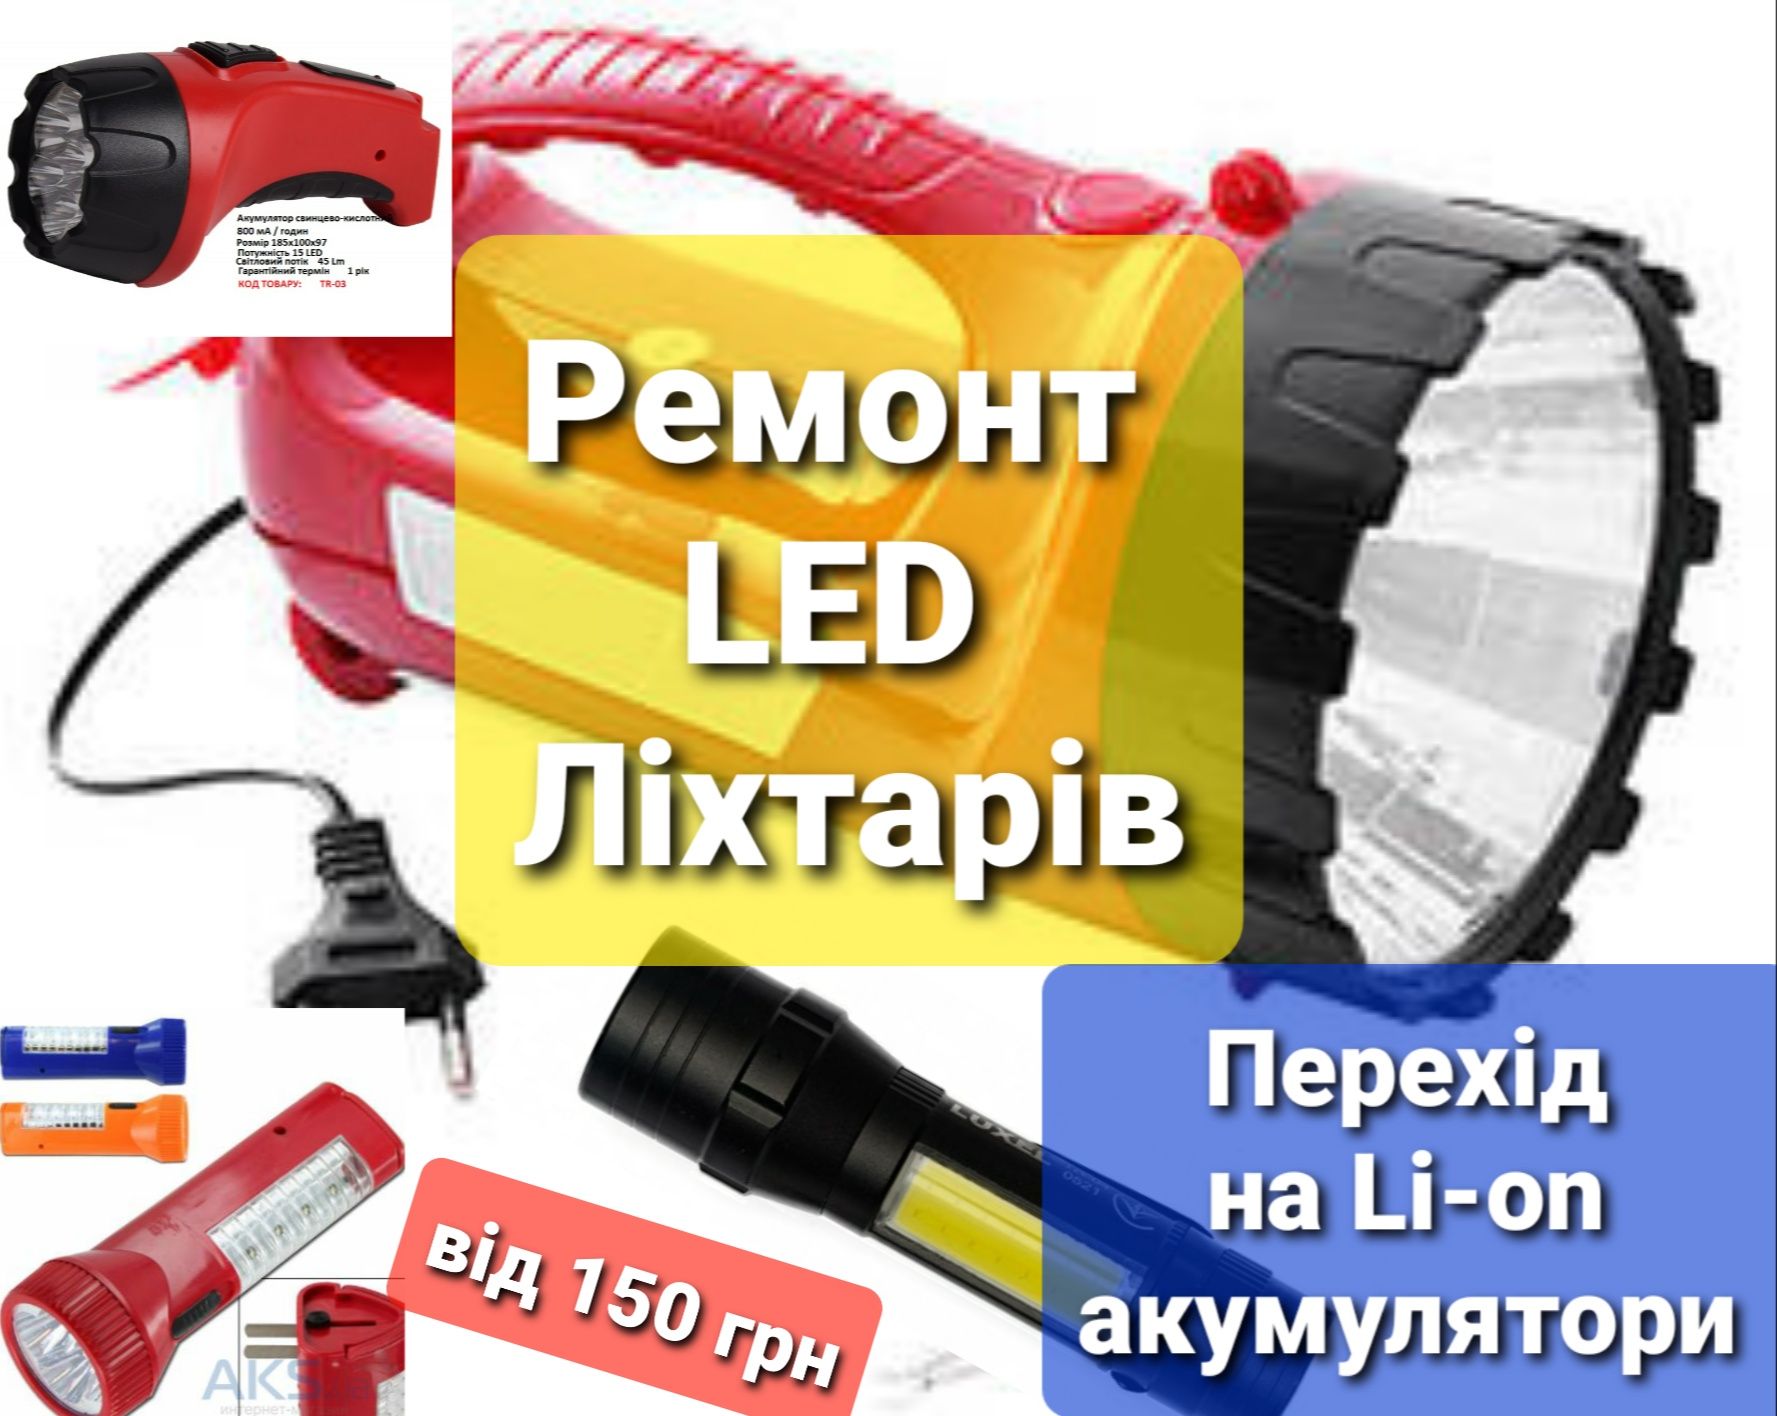 Ремонт LED ліхтарів (фонарик) перехід на літієві акумулятори пайка